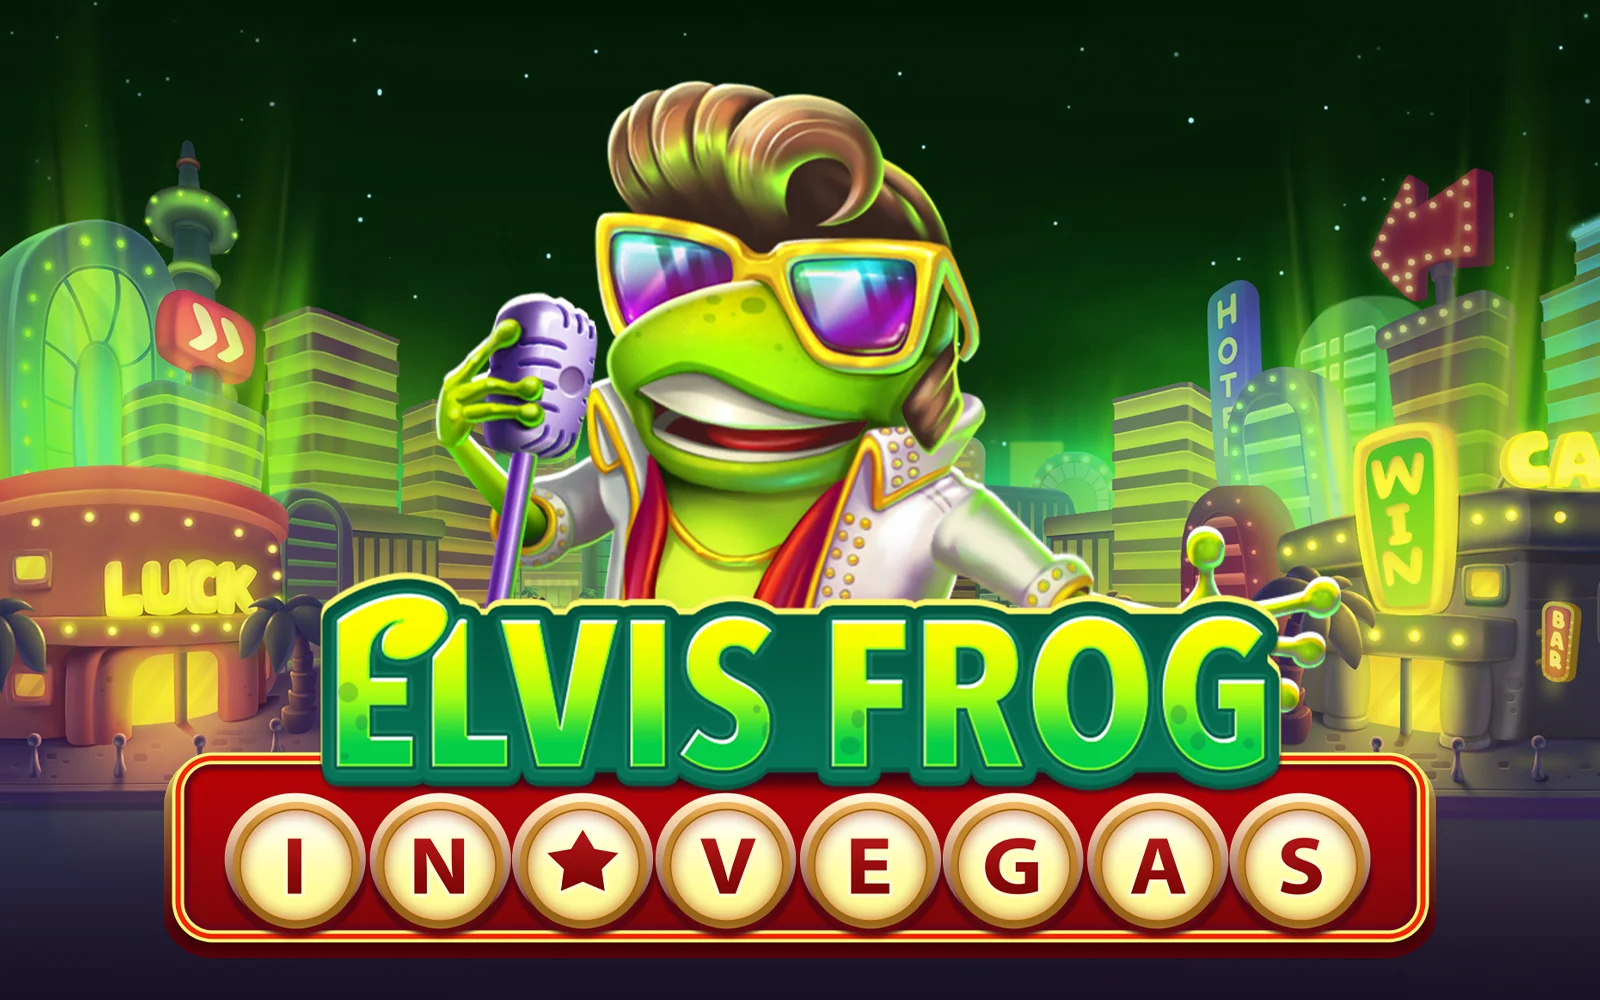 Speel Elvis Frog in Vegas op Starcasino.be online casino